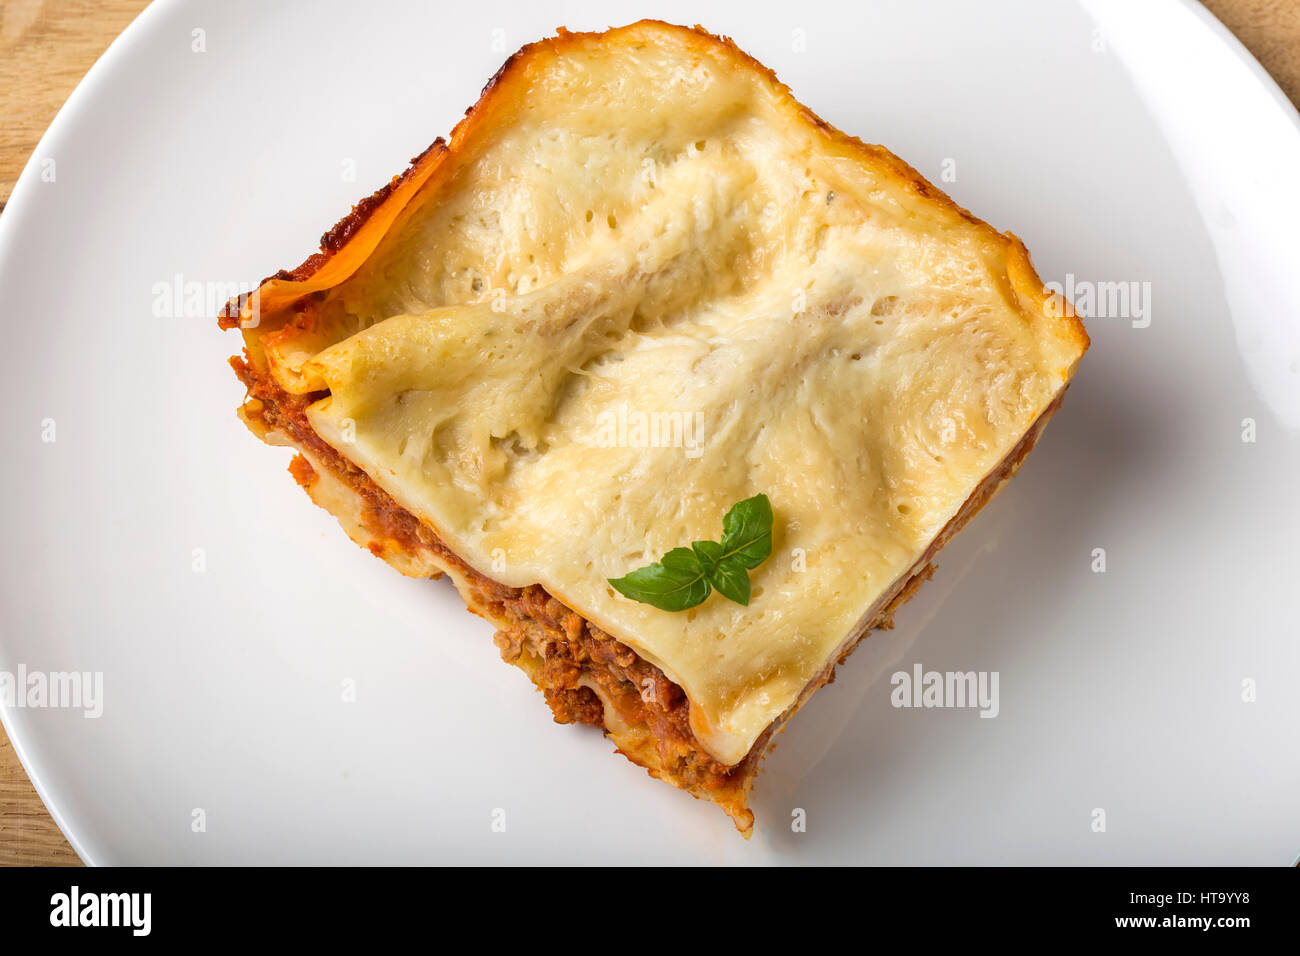 Casalingo italiano lasagne bolognesi sulla piastra bianca con basilico Foto Stock